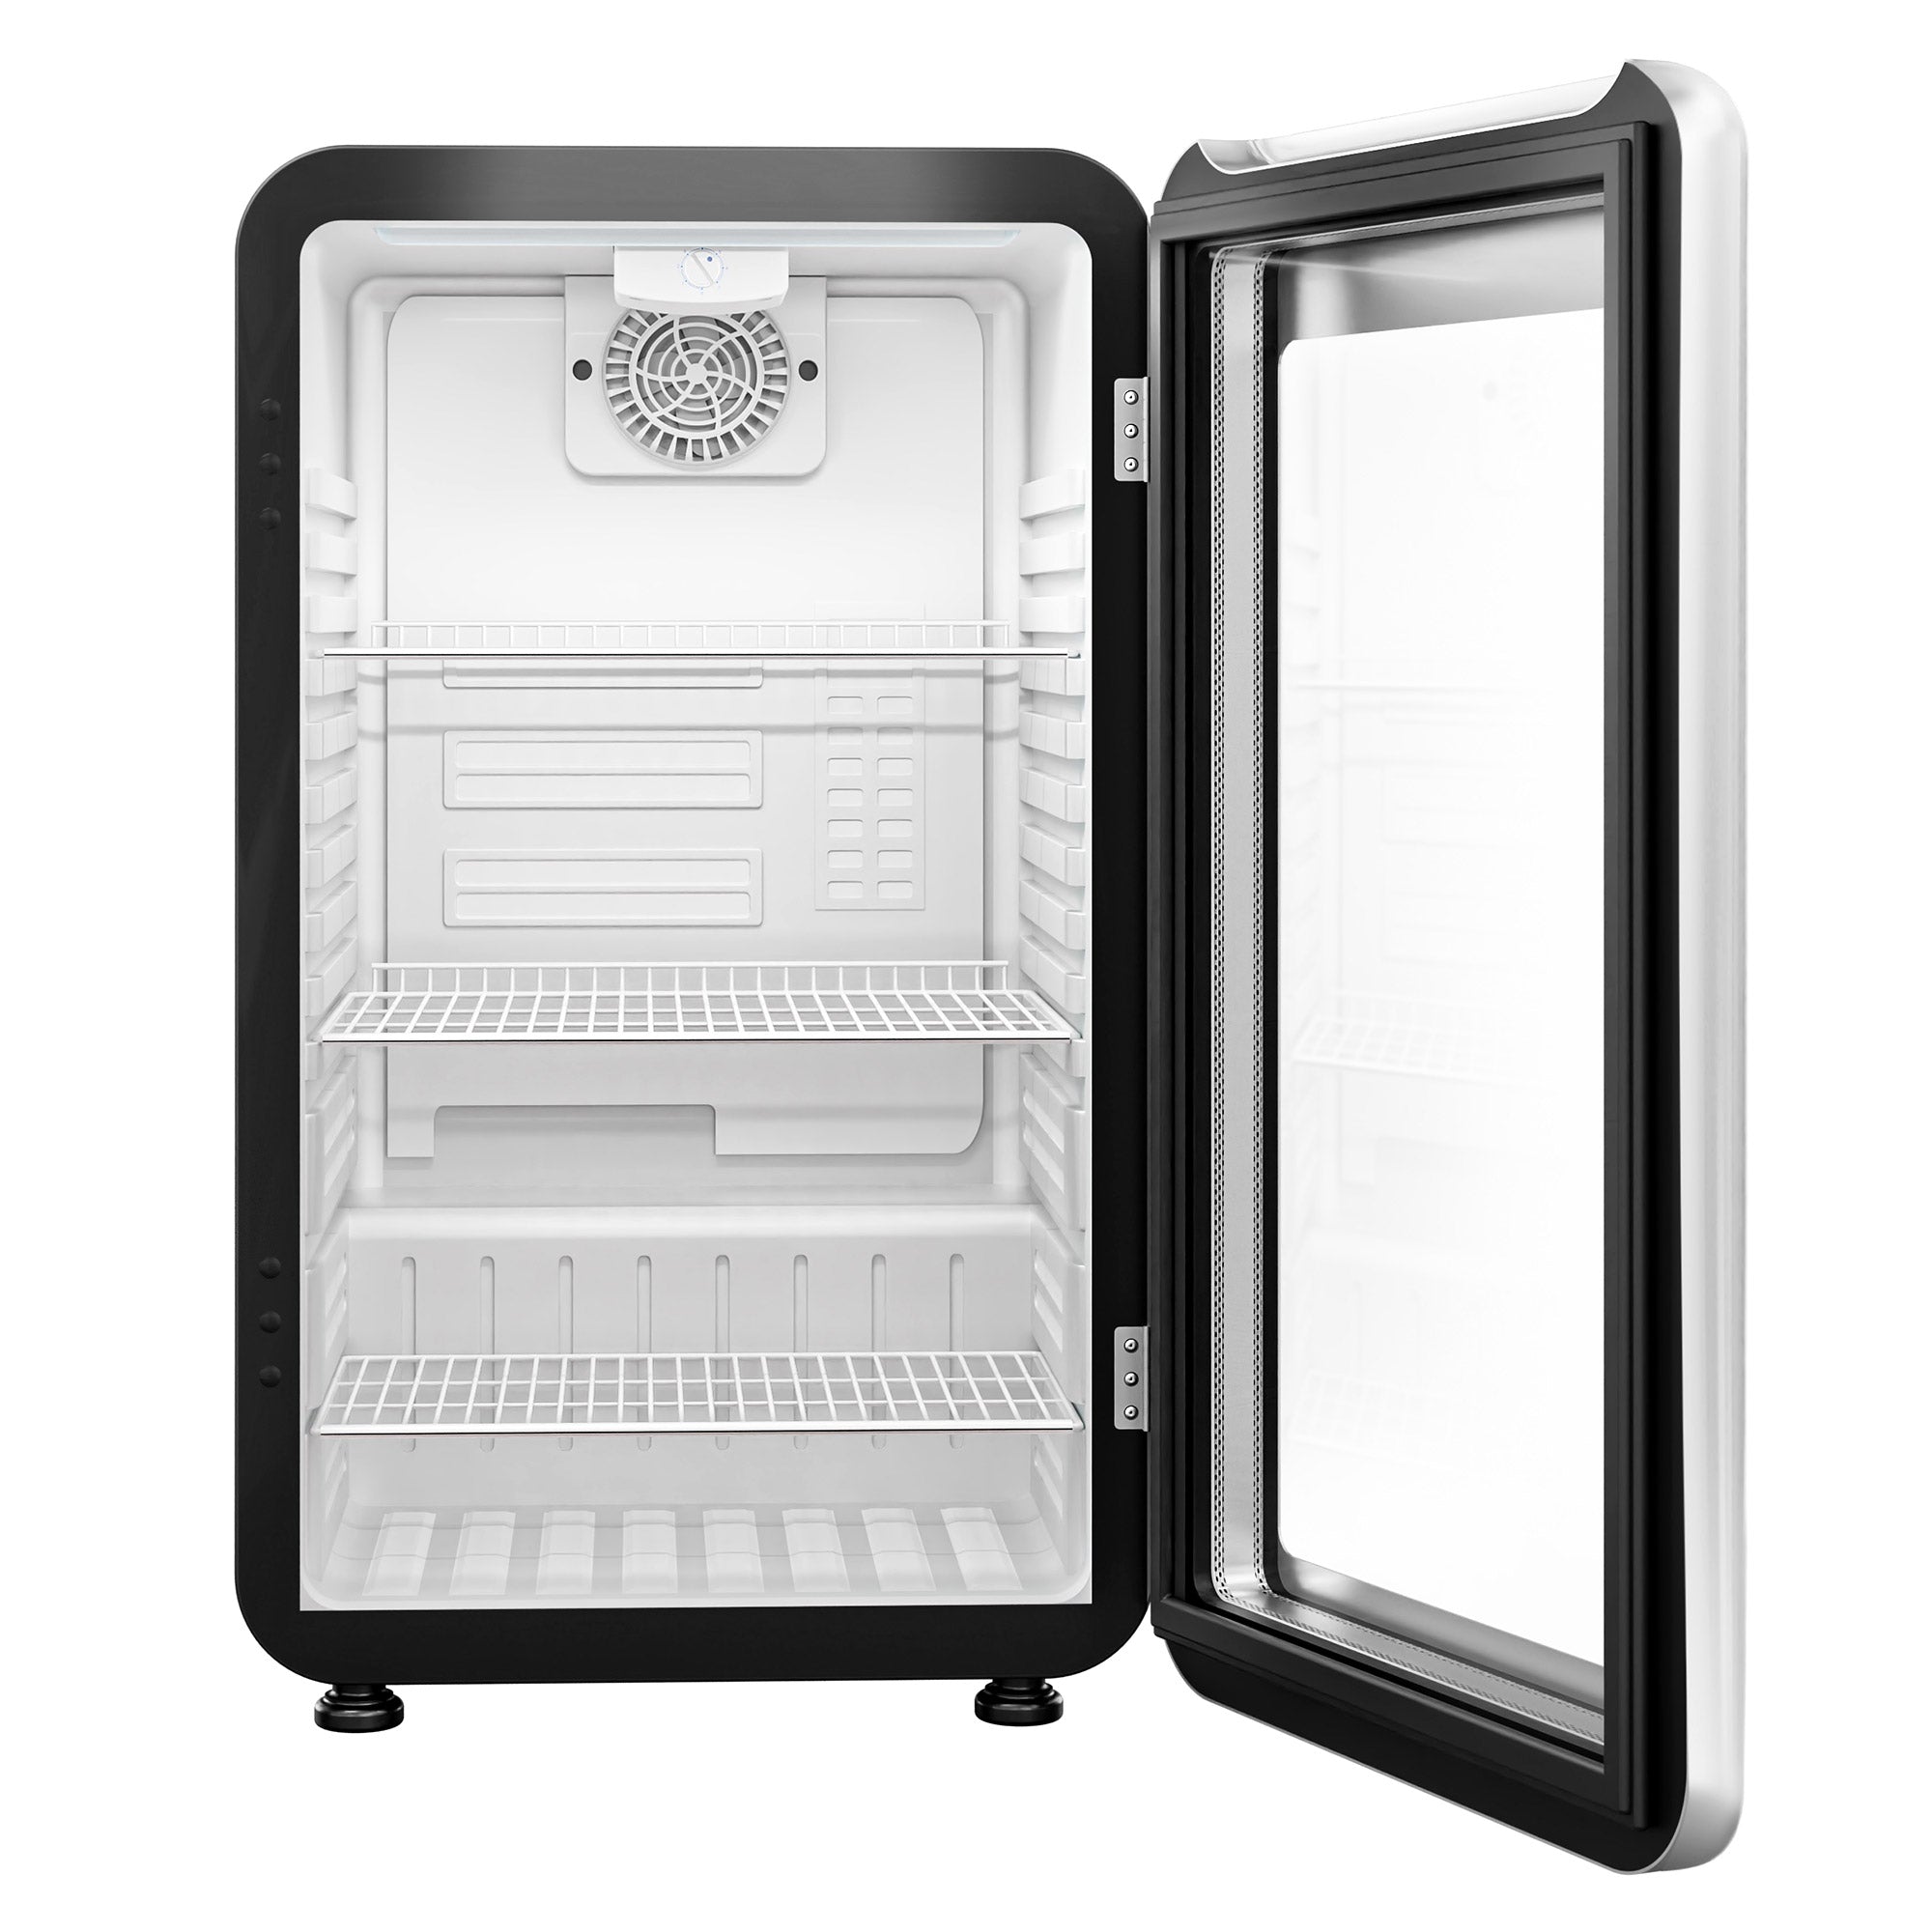 Mini køleskab - 113 Liter - med 1 glasdør - Sort/Sølv